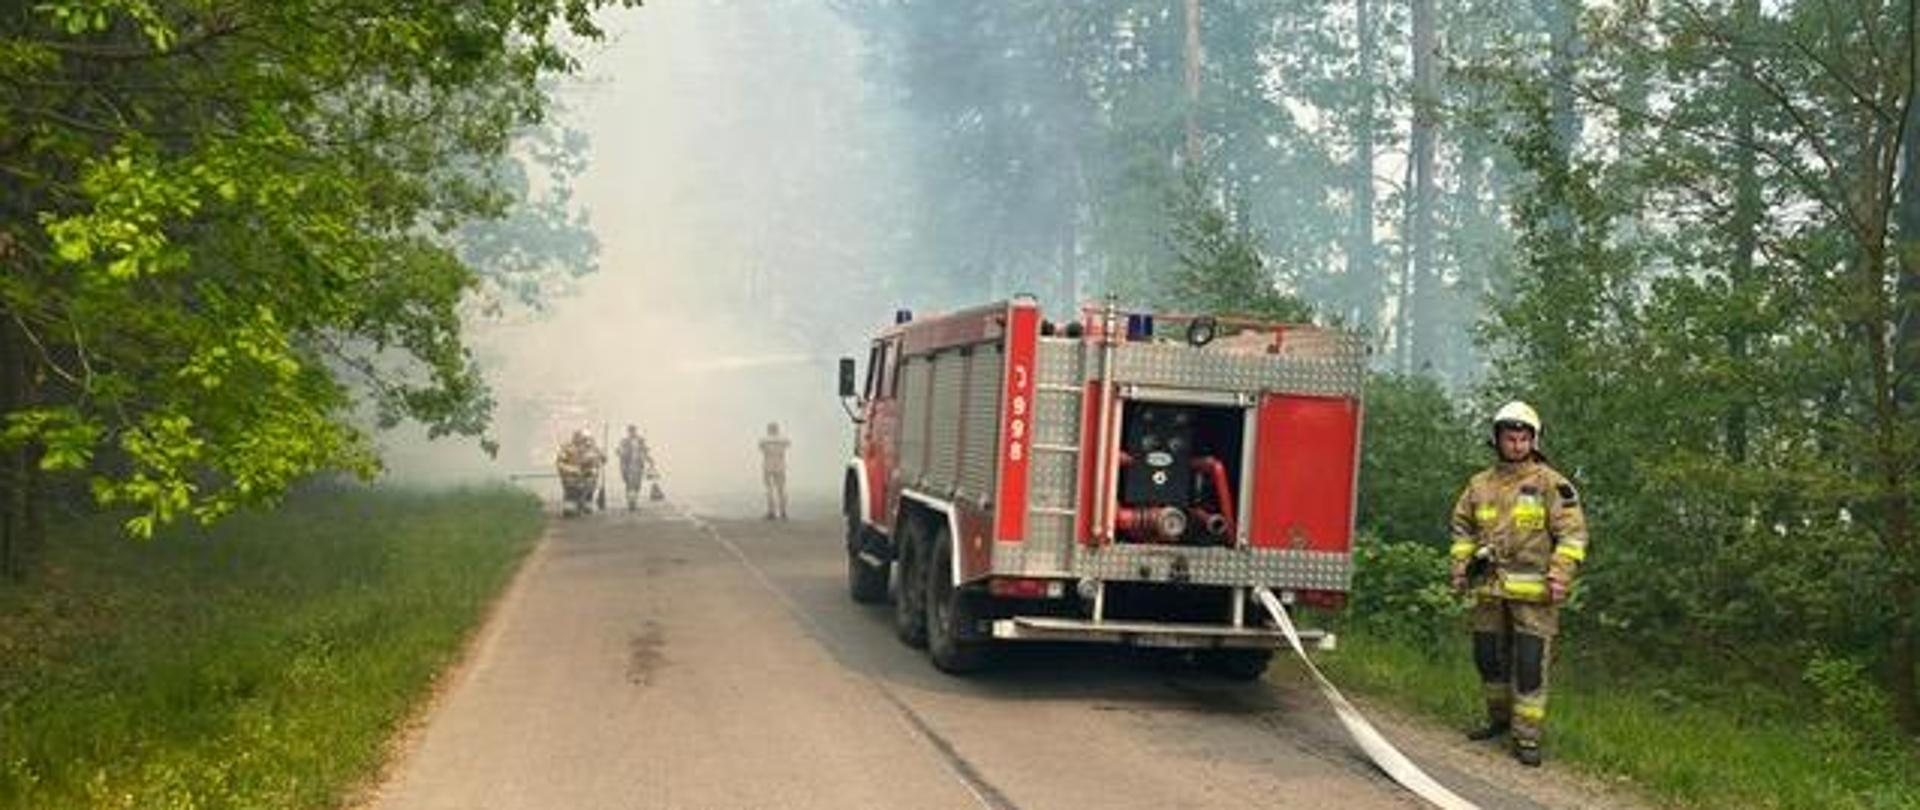 Zdjęcie przedstawia drogę w lesie i stojący na niej samochód pożarniczy. W głębi silnie zadymiony las i ratownicy ze sprzętem gaśniczym.